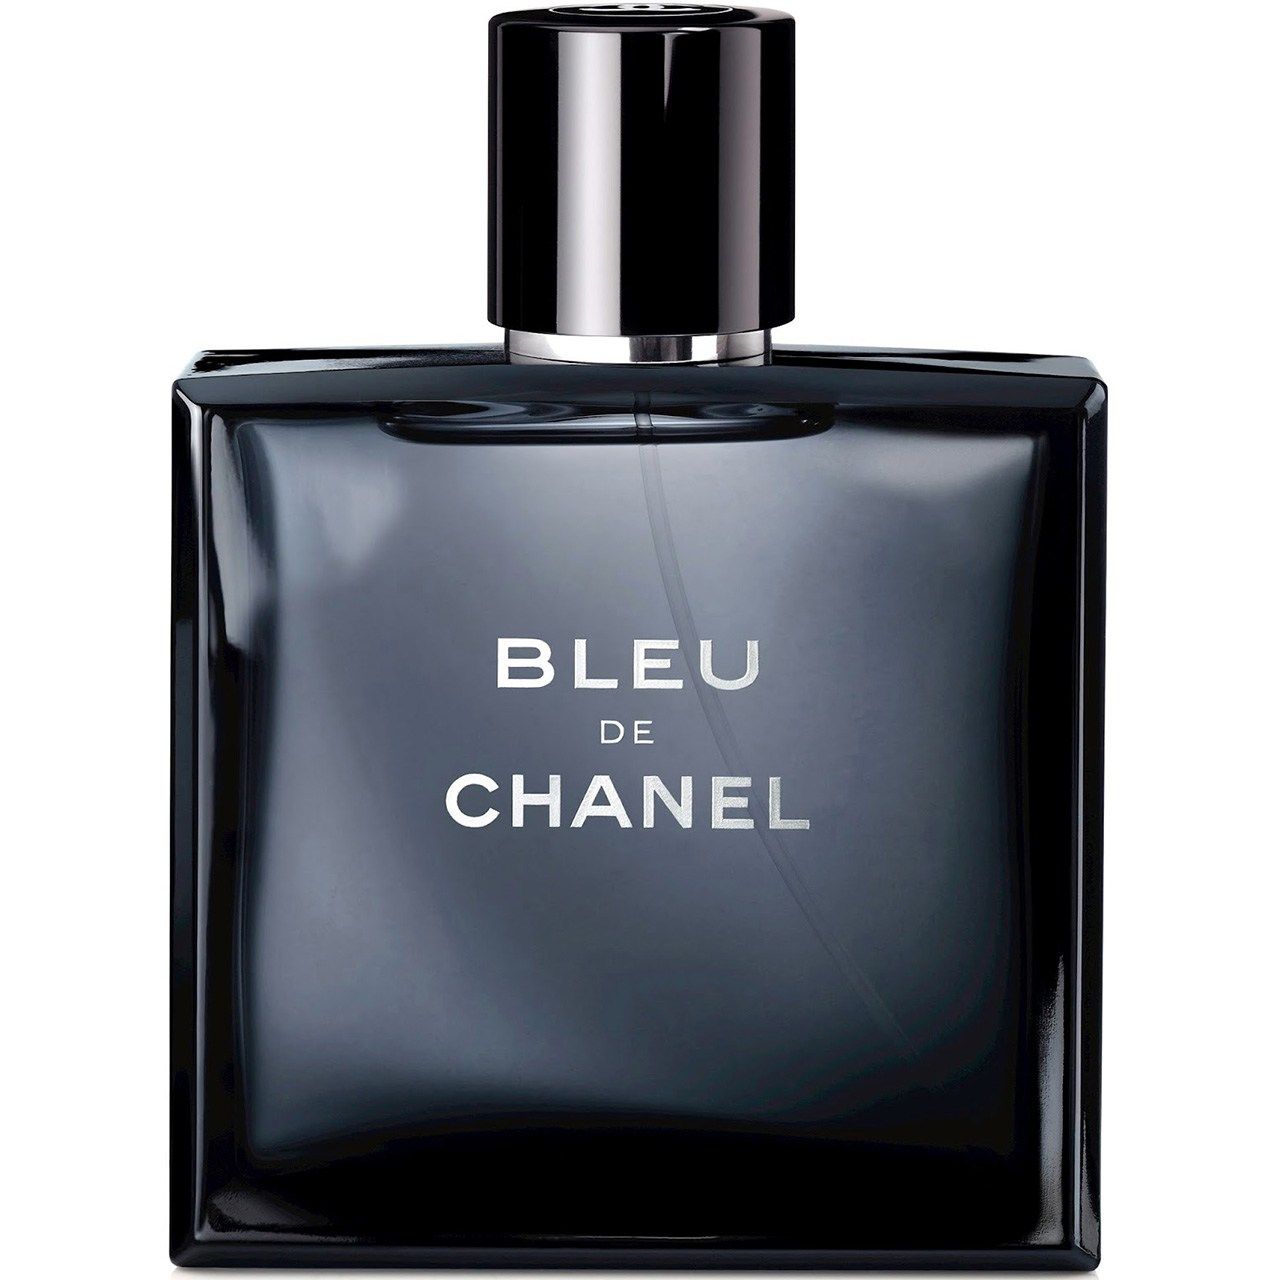 ادو تویلت مردانه شانل مدل Bleu de Chanel حجم 50 میلی لیتر -  - 1